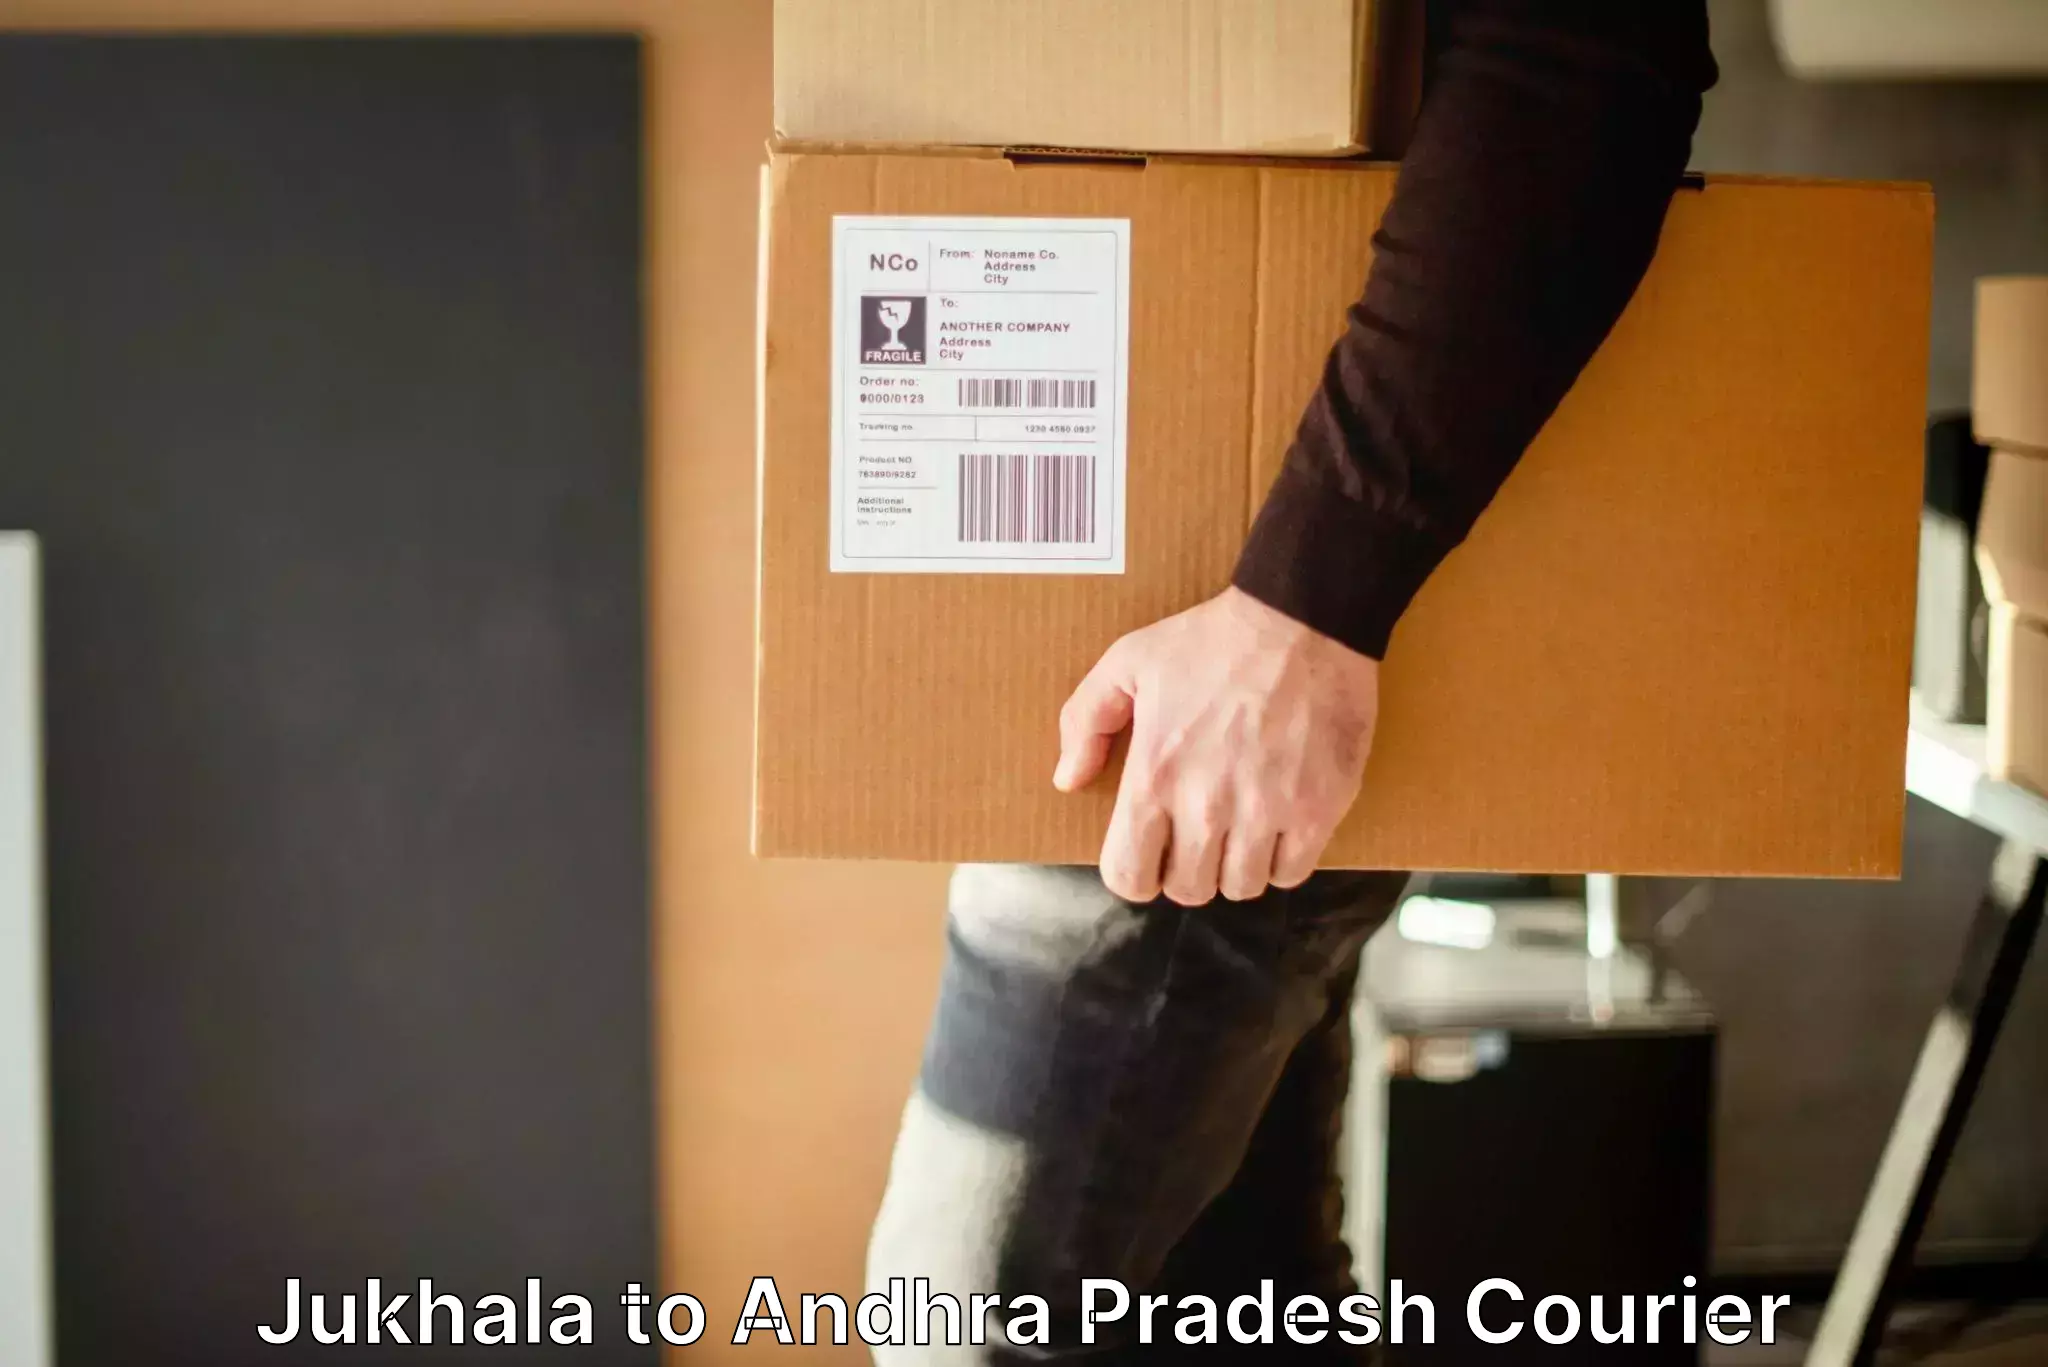 Luggage delivery network Jukhala to Mylavaram